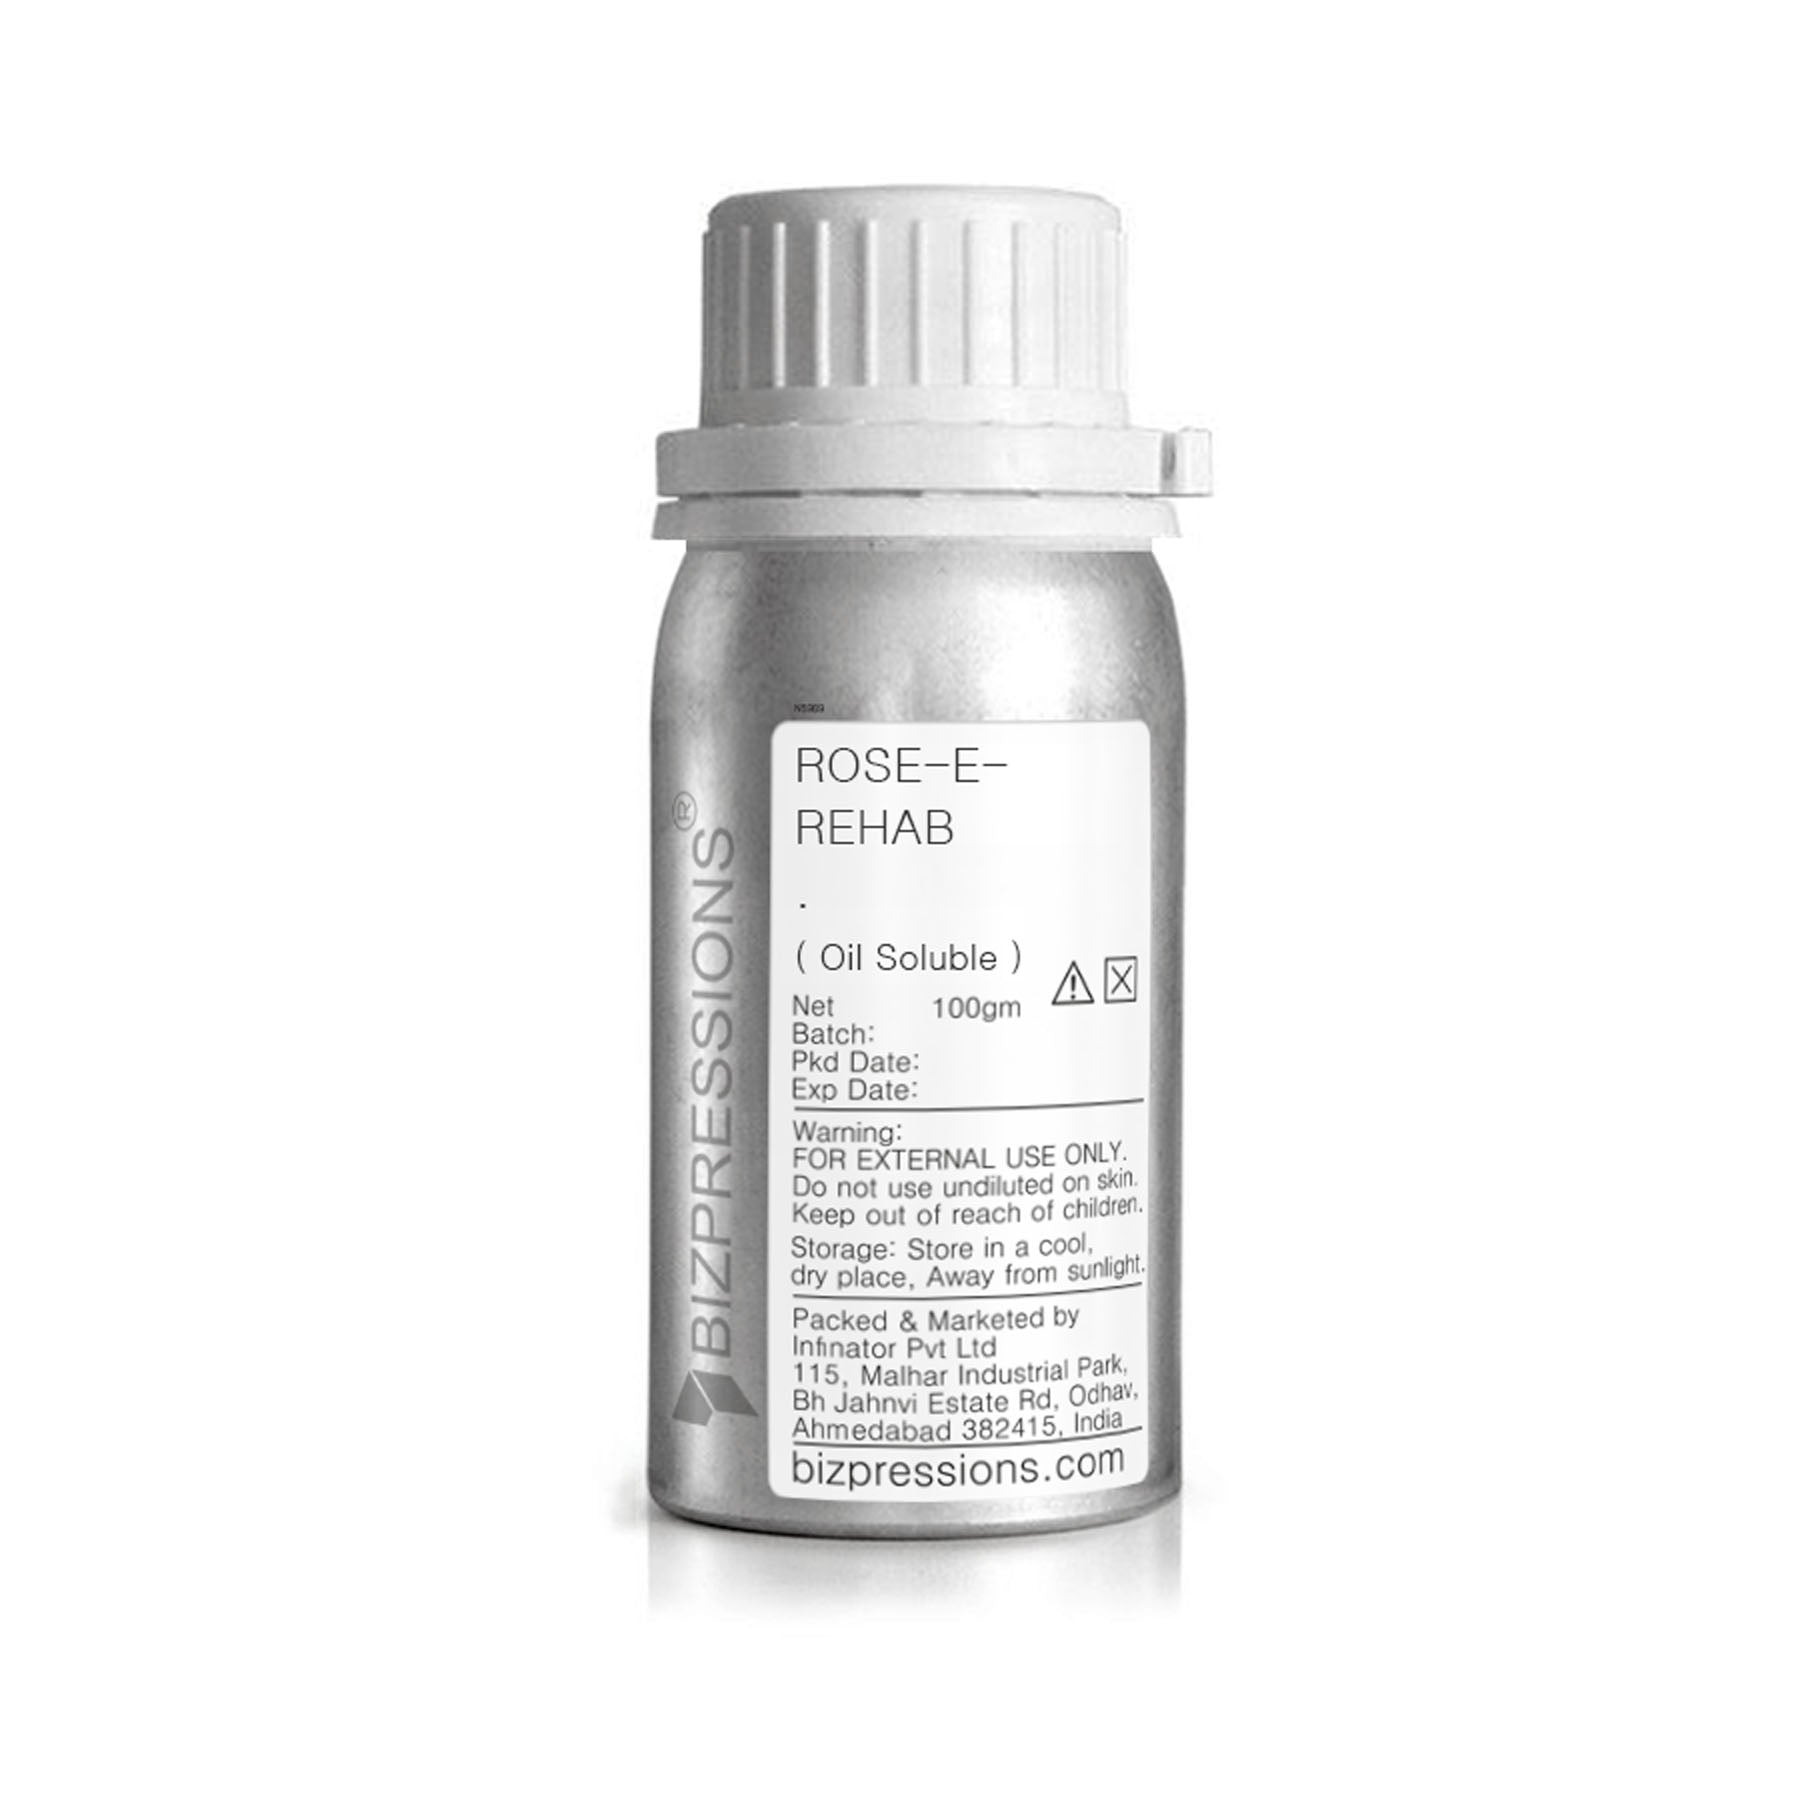 ROSE-E-REHAB - Fragrance ( Oil Soluble ) - 100 gm